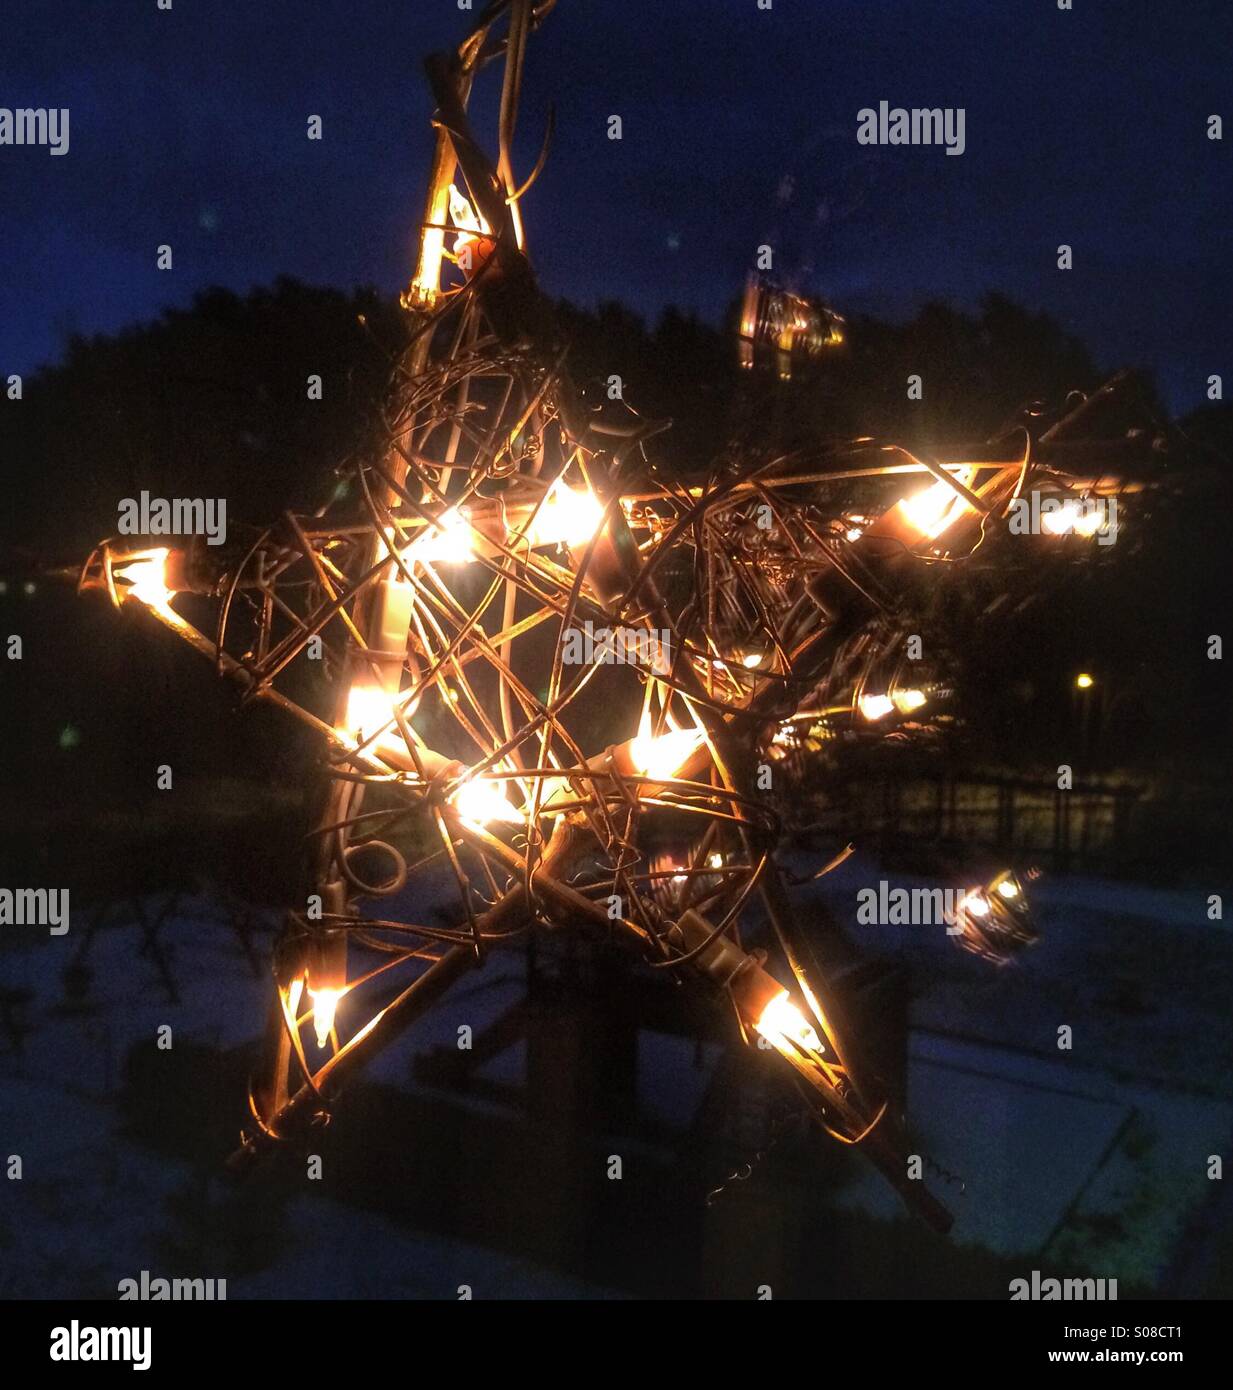 Stella Di Natale Illuminata.Illuminata Di Notte Stella Appesa Come Una Decorazione Di Natale In Una Finestra Foto Stock Alamy